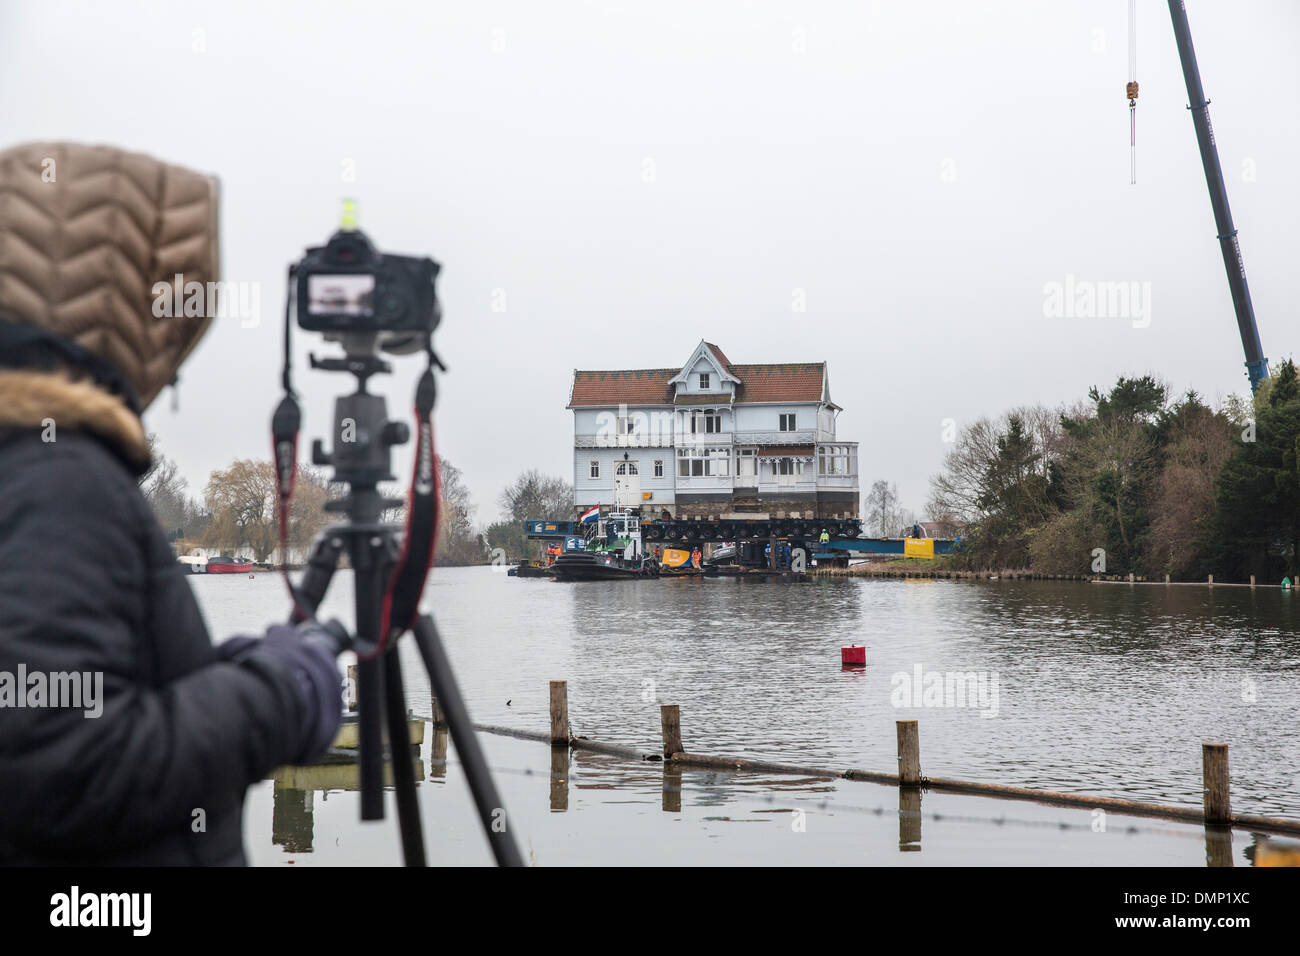 Paesi Bassi, Muiden, trasporto di casa monumentale chiamato Vechthoeve sul fiume Vecht. Fotografo Marjolijn van Steeden prende le immagini e di time-lapse. Foto Stock